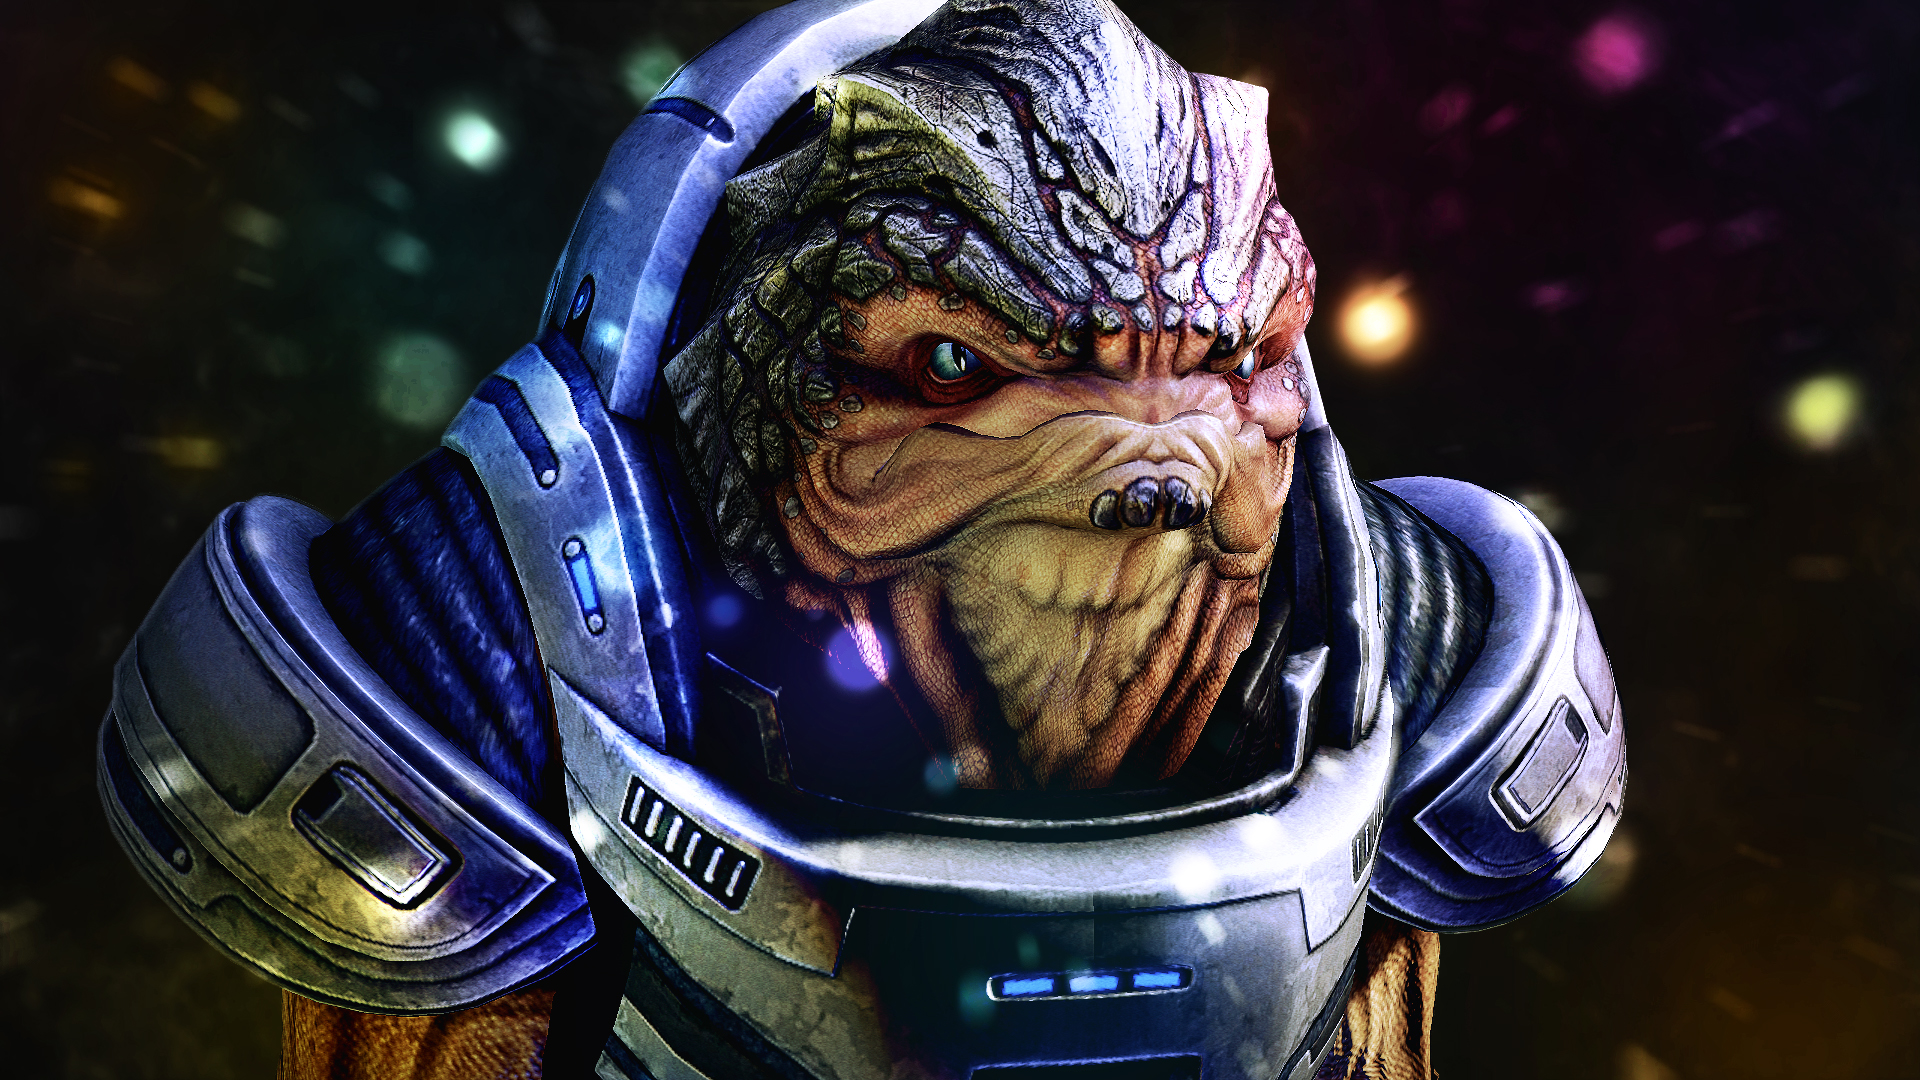 Mass Effect, grunt - desktop wallpaper